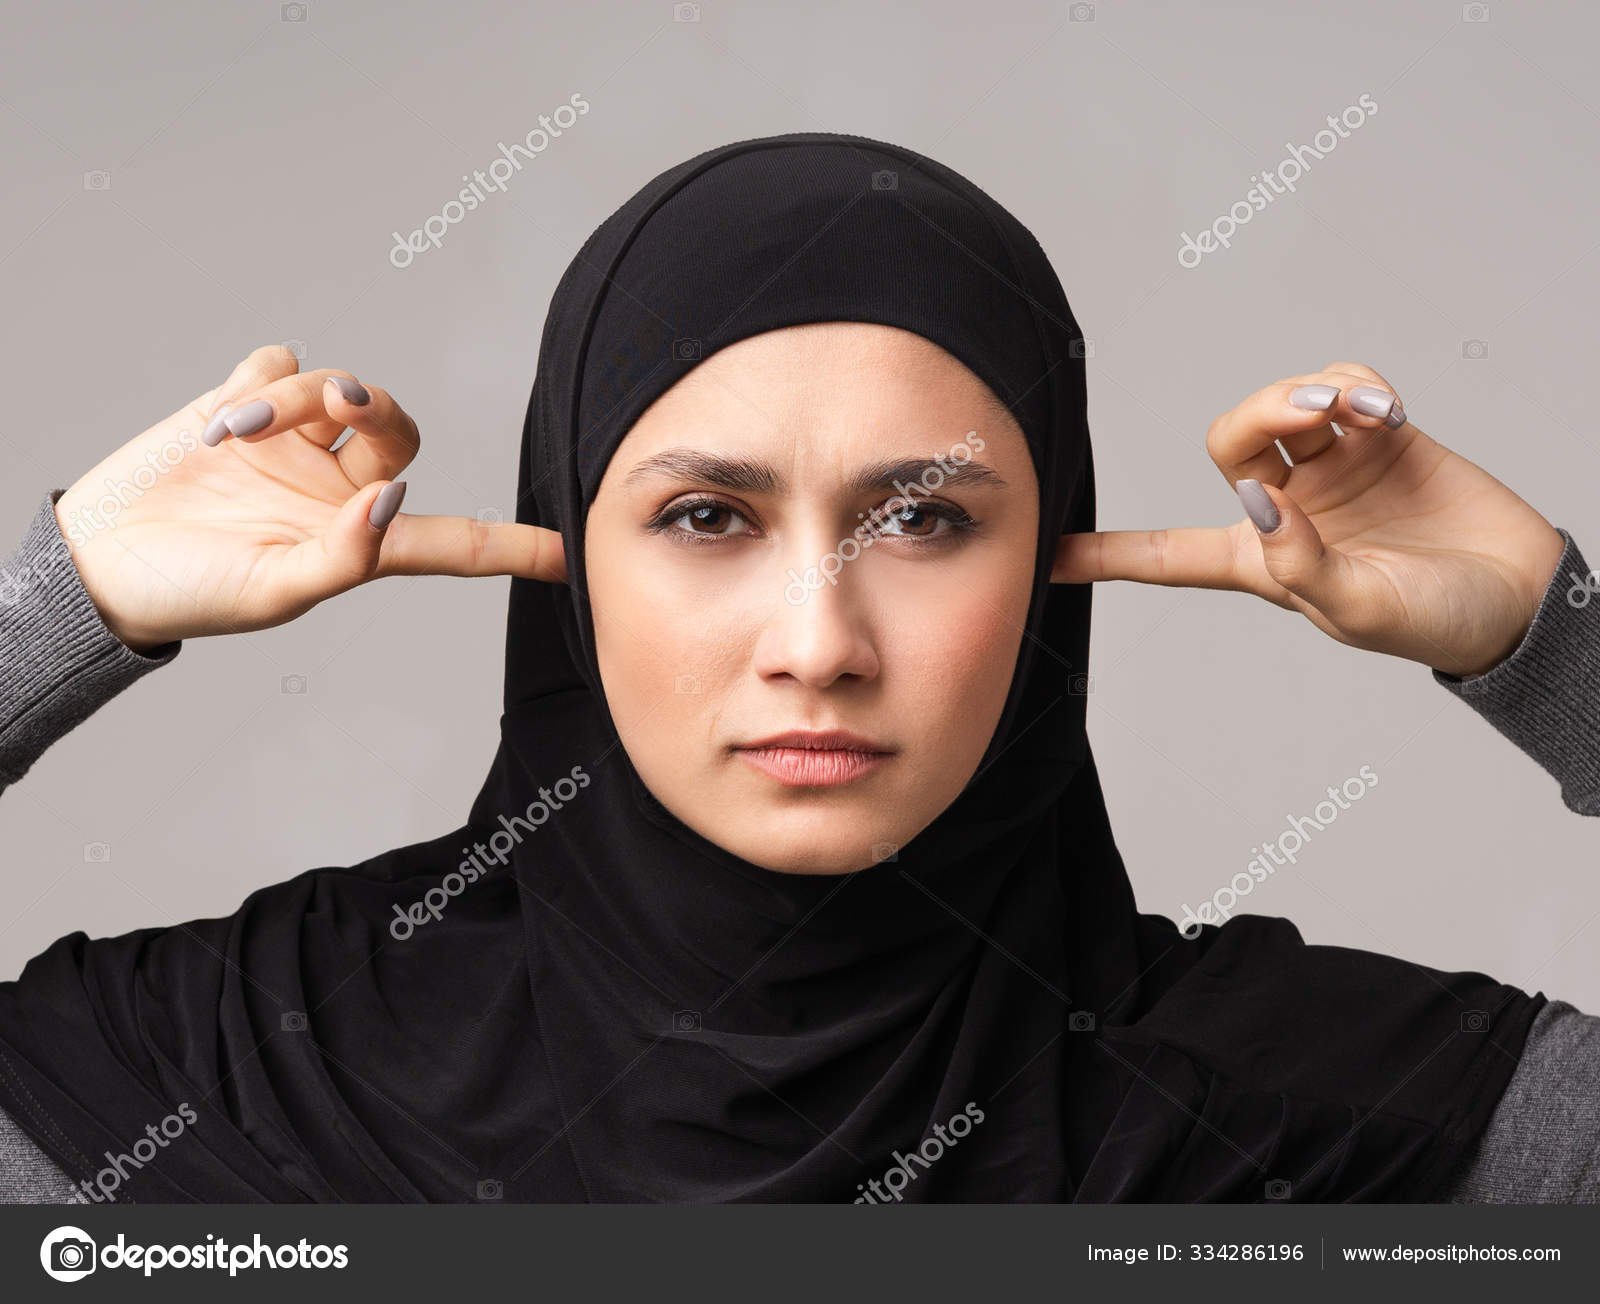 Minimaliseren Stuwkracht hek Portret van serieuze moslim vrouw in hoofddoek het sluiten van oren met  vingers ⬇ Stockfoto, rechtenvrije foto door © Milkos #334286196